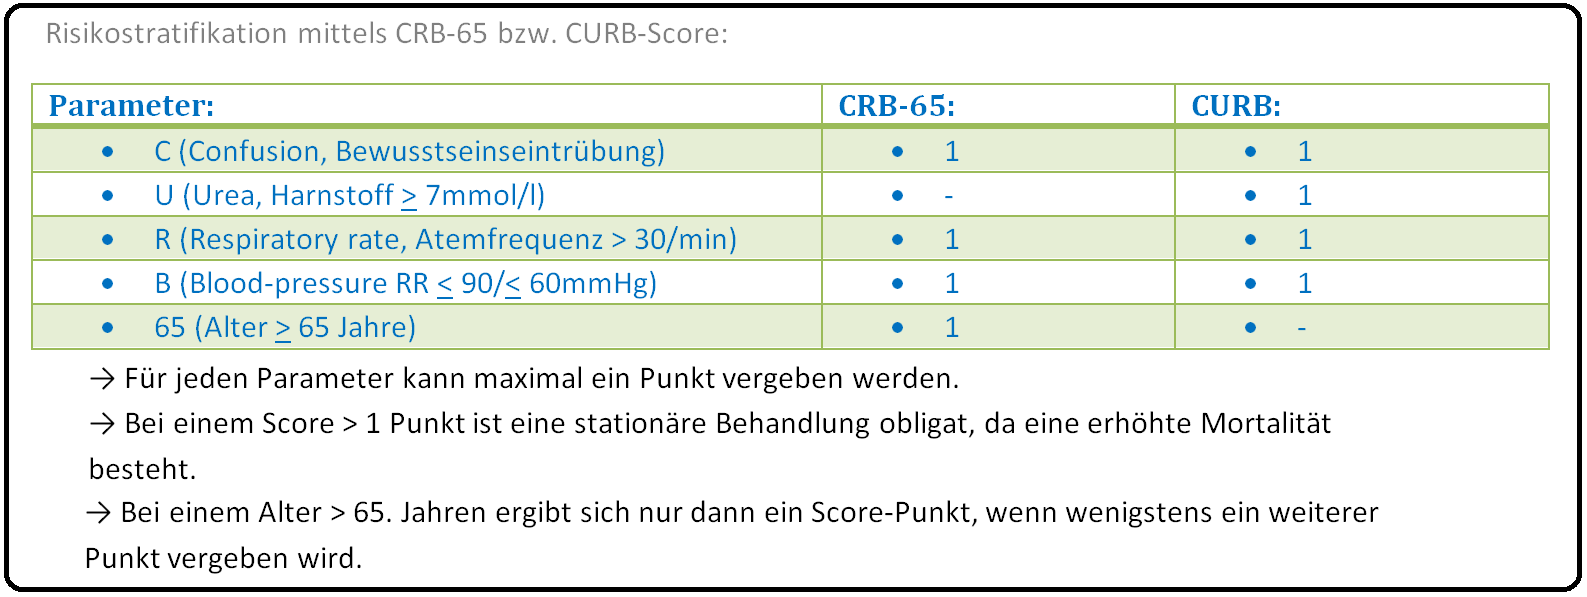 993 Risikostratifikation mittels CRB 65 bzw. CURB Score